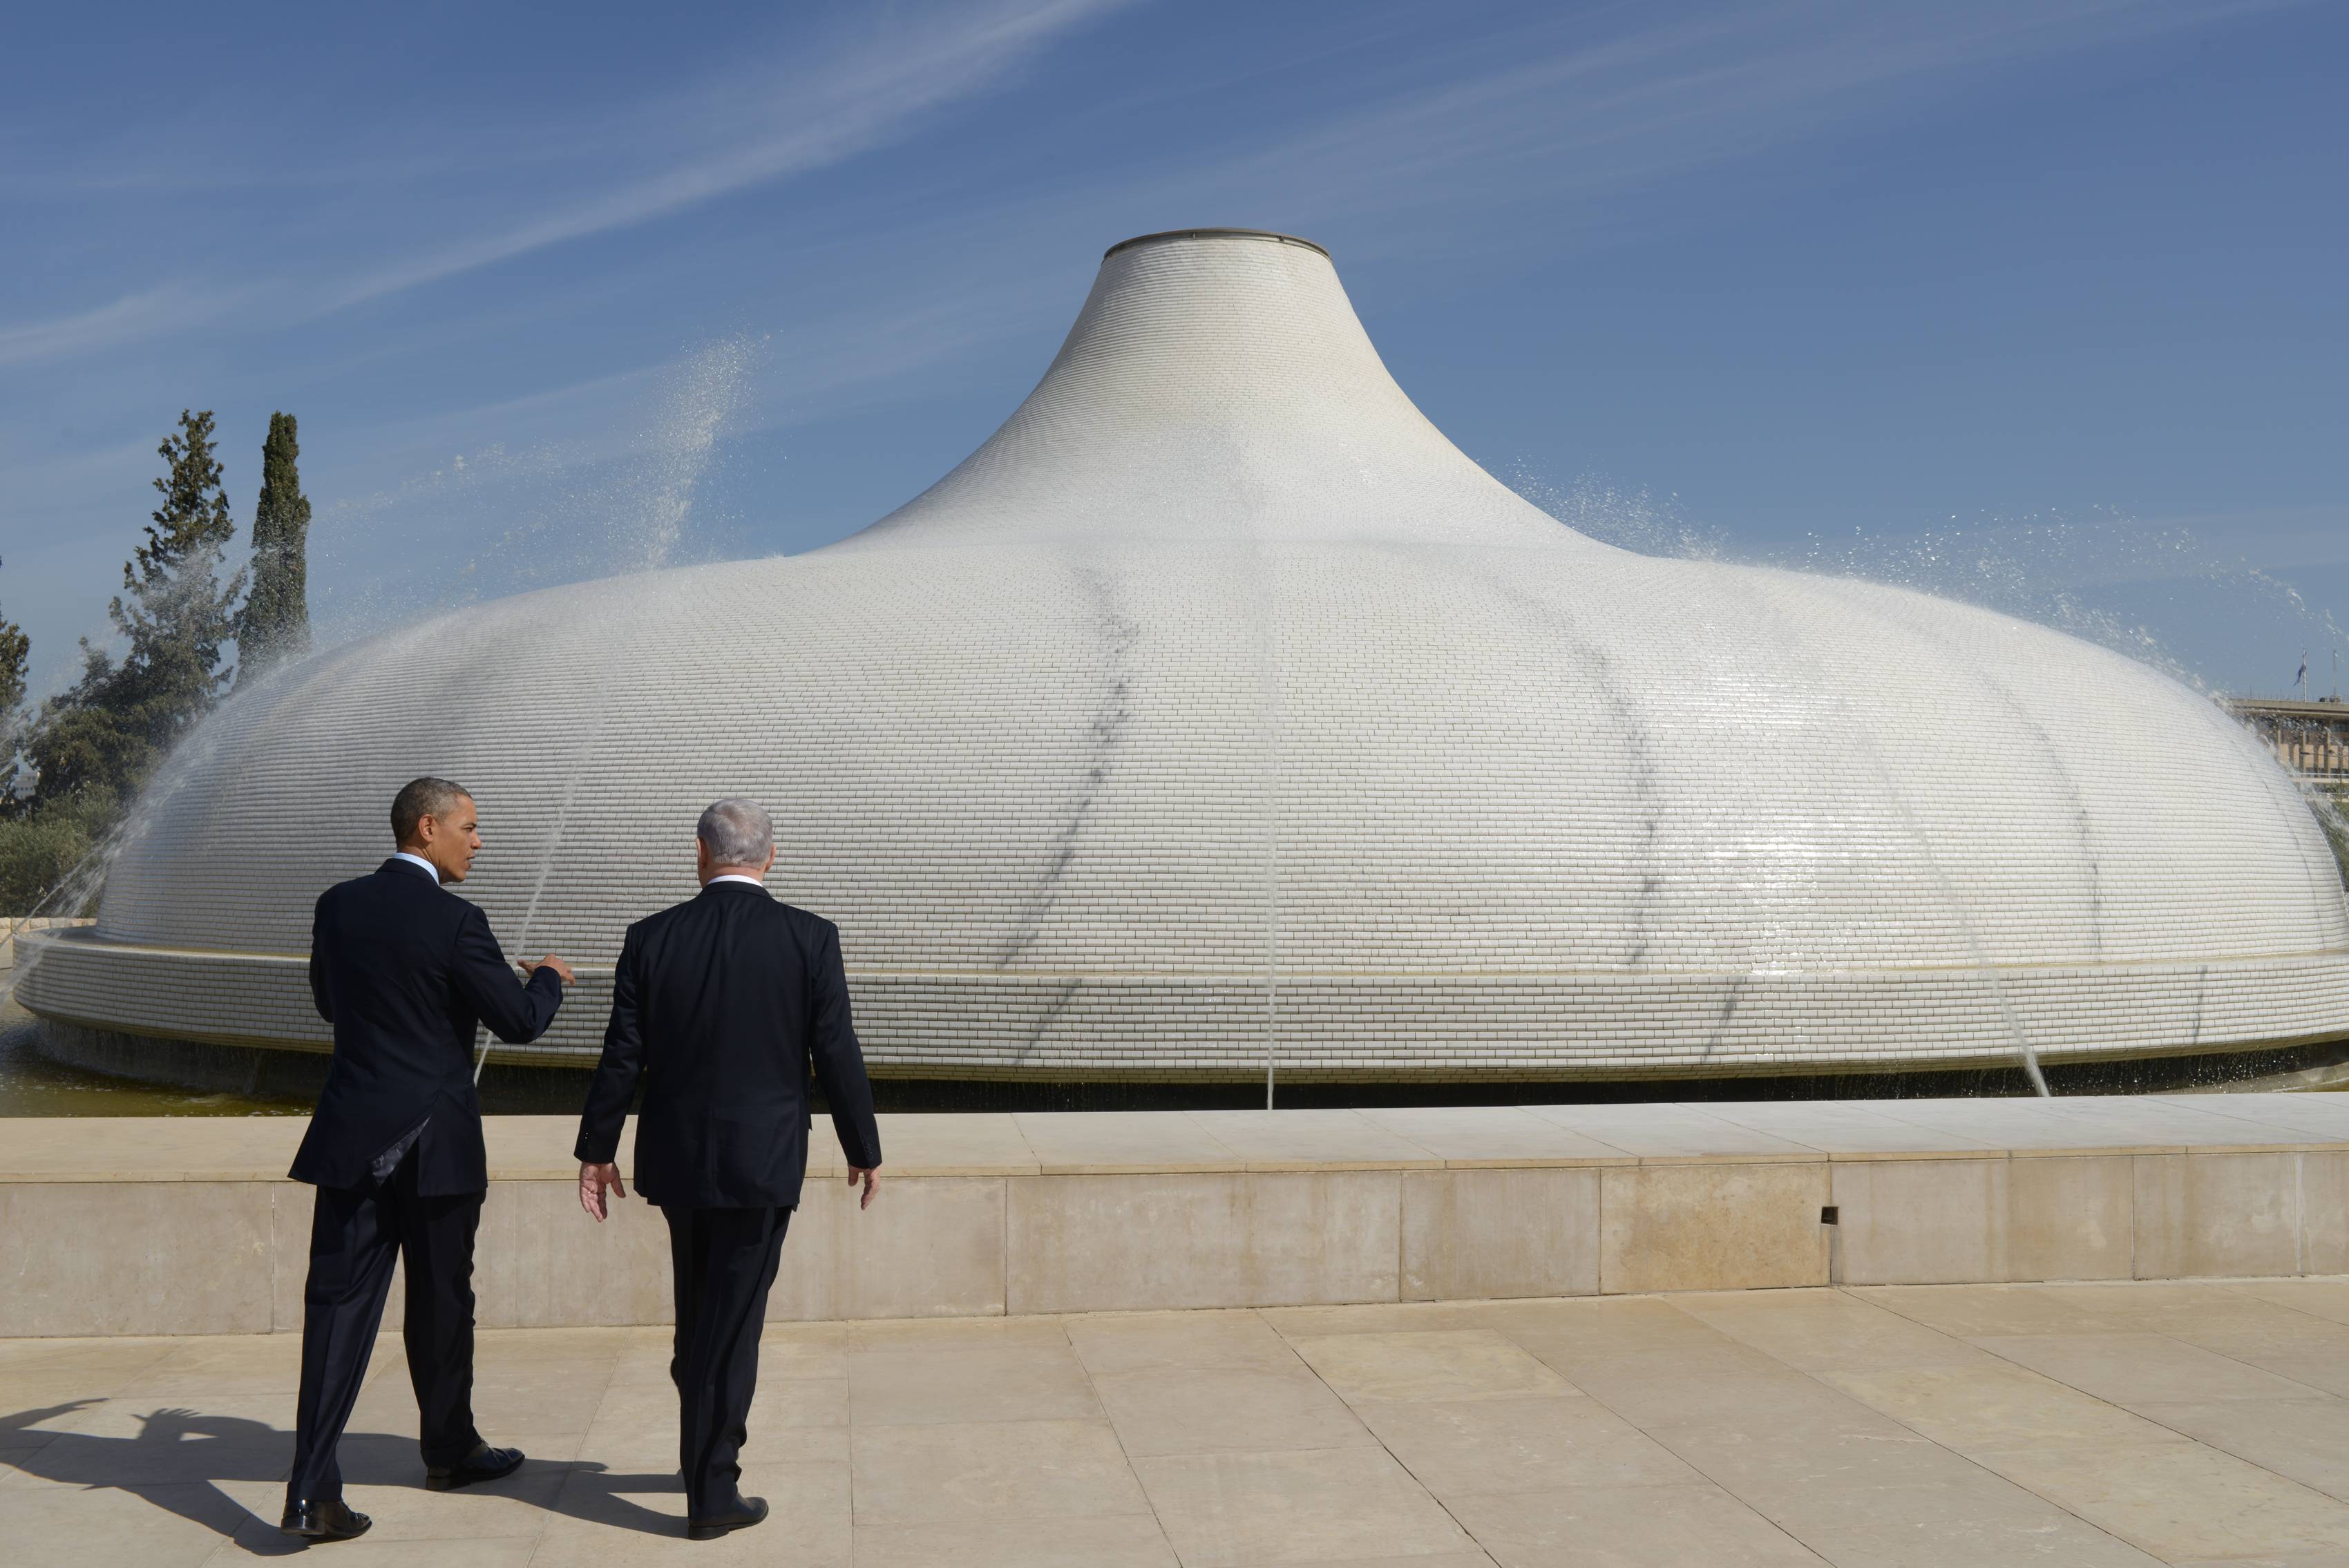 "מעורר השראה", אמר נשיא ארה"ב על פיתוחי הטכנולוגיה הישראלית